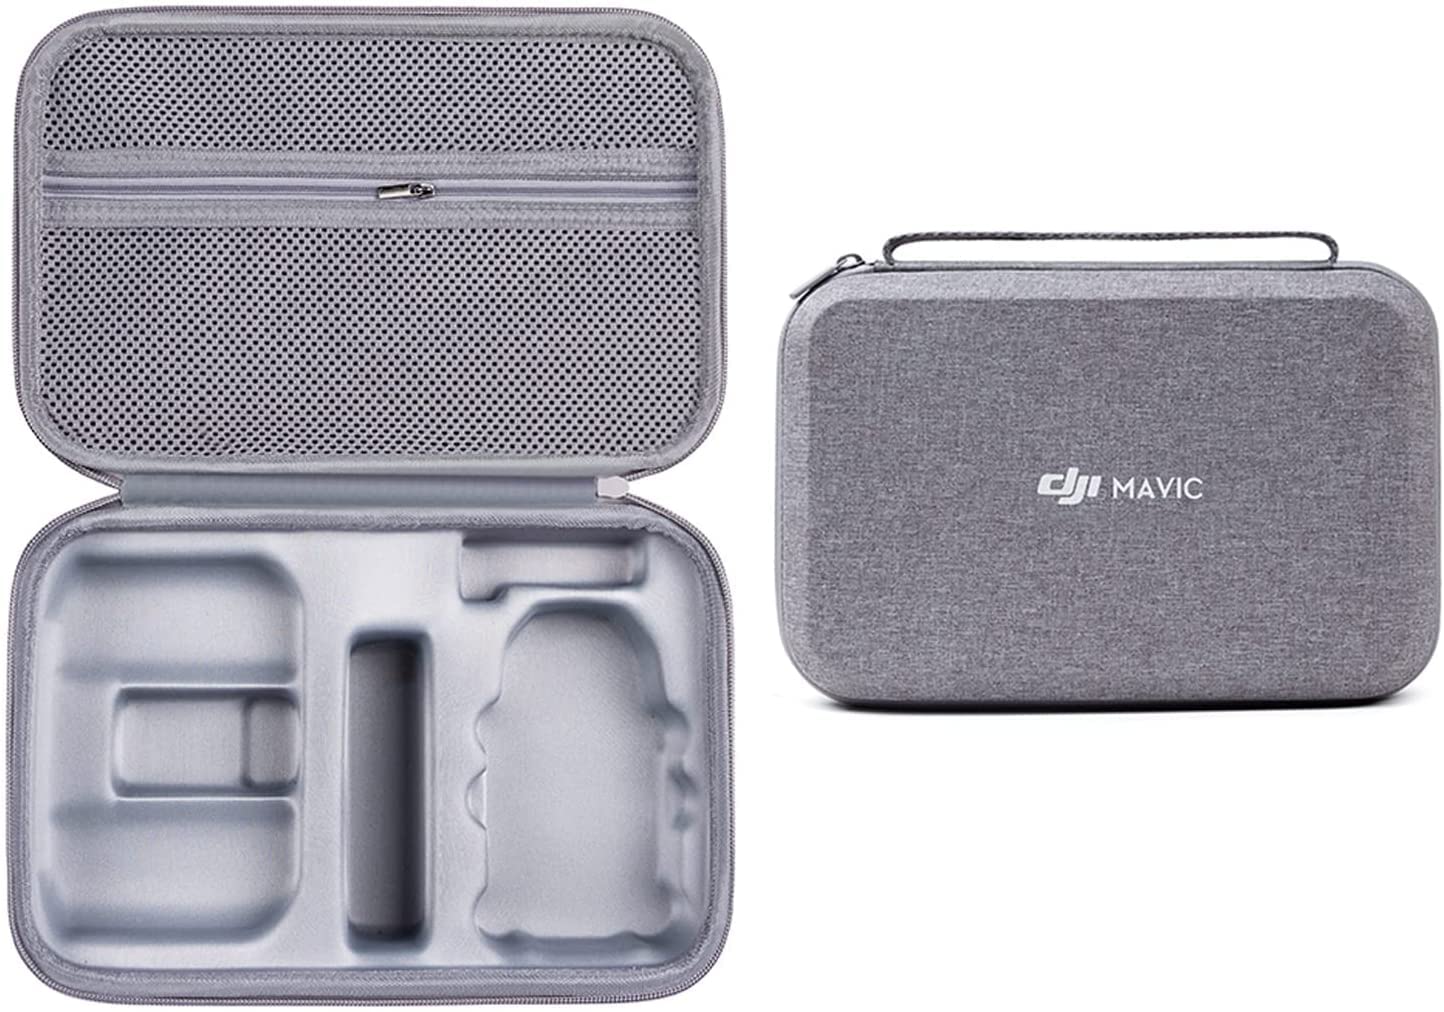 YueLi Mavic Mini 2 Tragetasche, wasserdichte Handtasche, tragbare Tasche, Drohnenkörper, Handtasche, grau, kompakte Box für DJI Mavic Mini 2 Drohnenzubehör, grau, Kompakt von YueLi